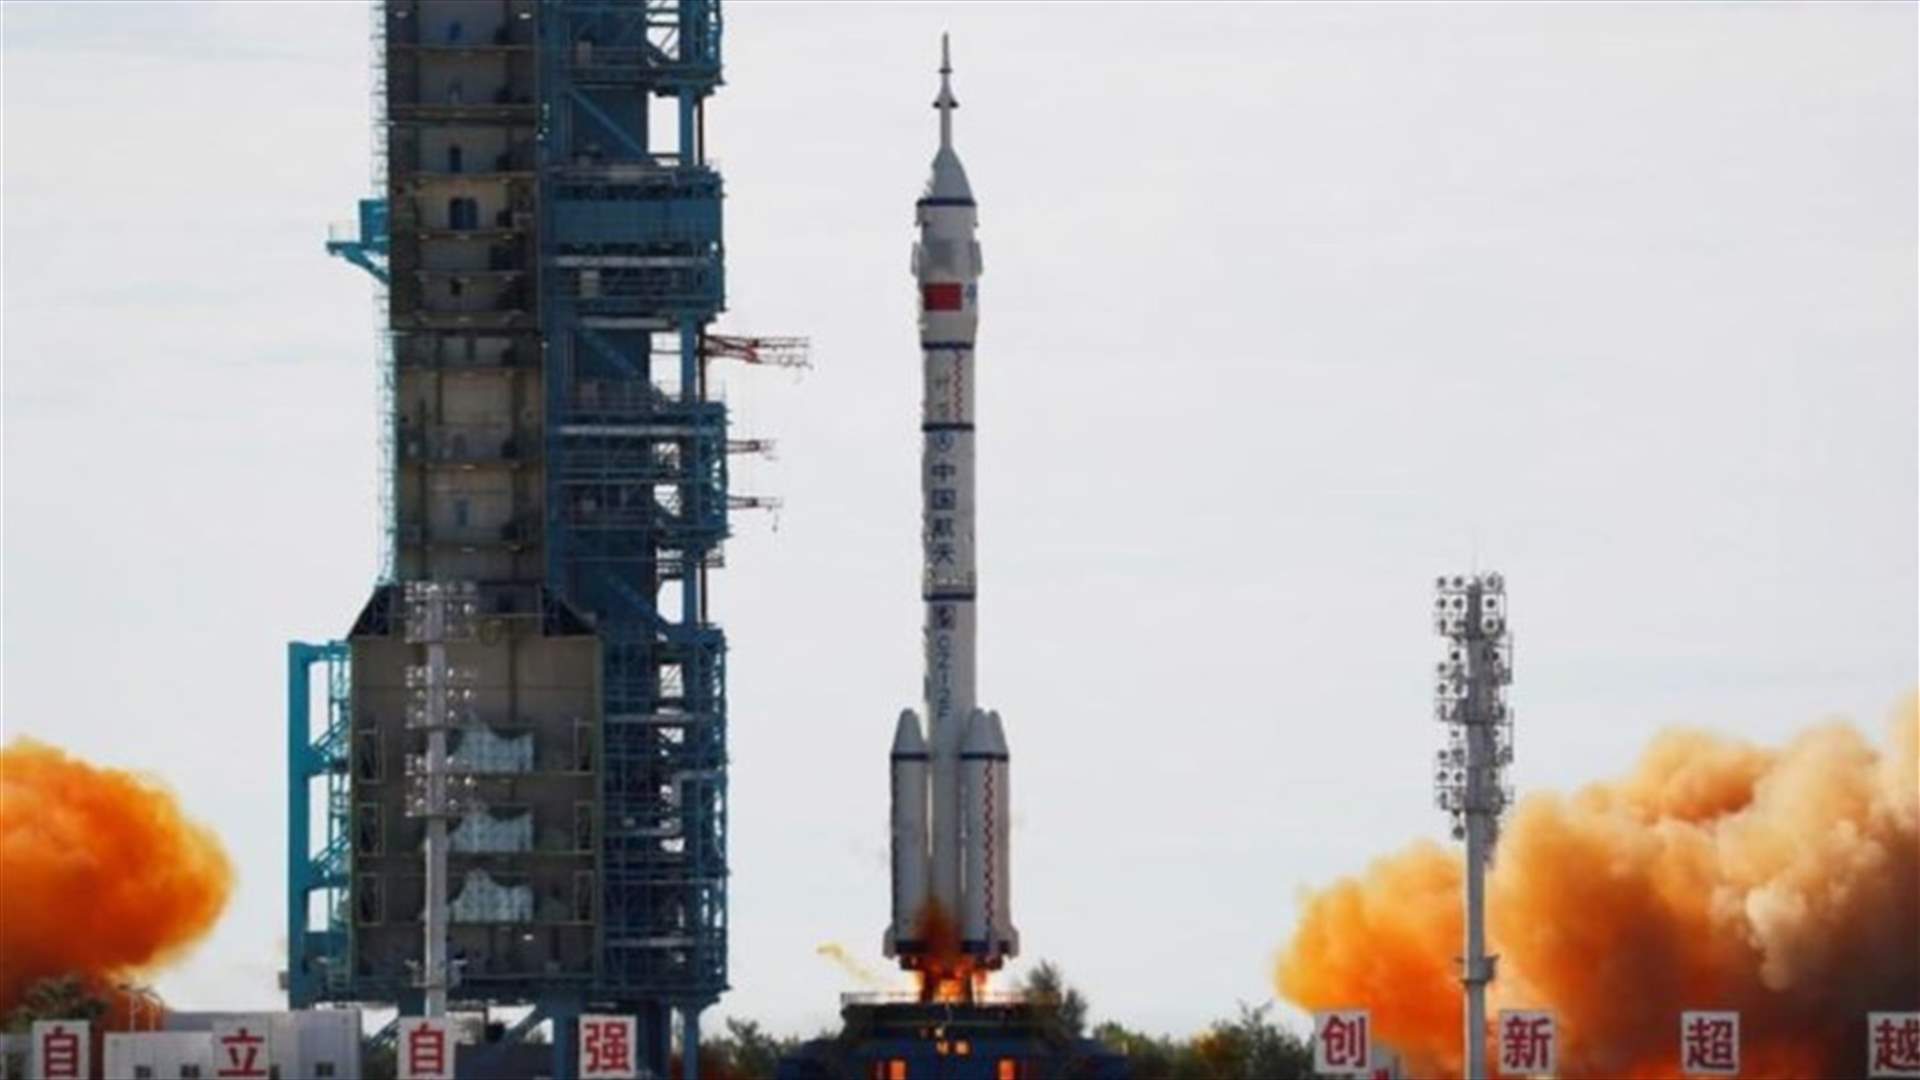 في أول مهمة مأهولة منذ سنوات... رواد صينيون يصلون إلى الوحدة الرئيسية بمحطة الفضاء الصينية